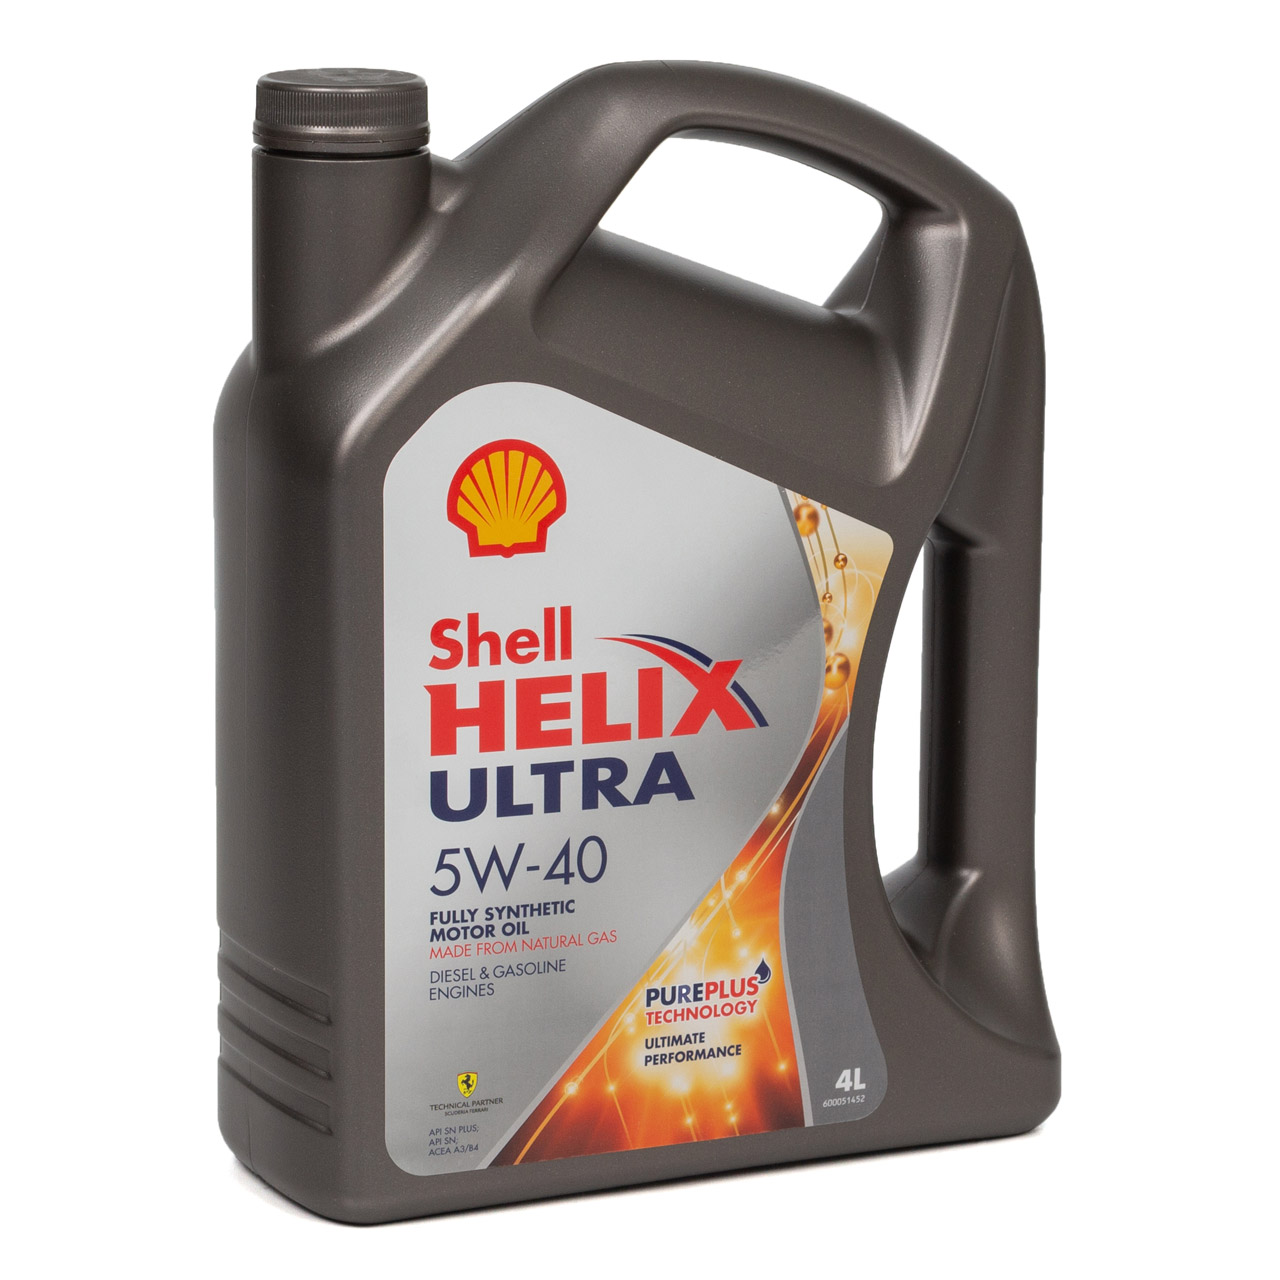 SHELL Motoröl Öl HELIX ULTRA 5W-40 5W40 VW 502/505.00 MB 226/229.5 - 5L 5 Liter